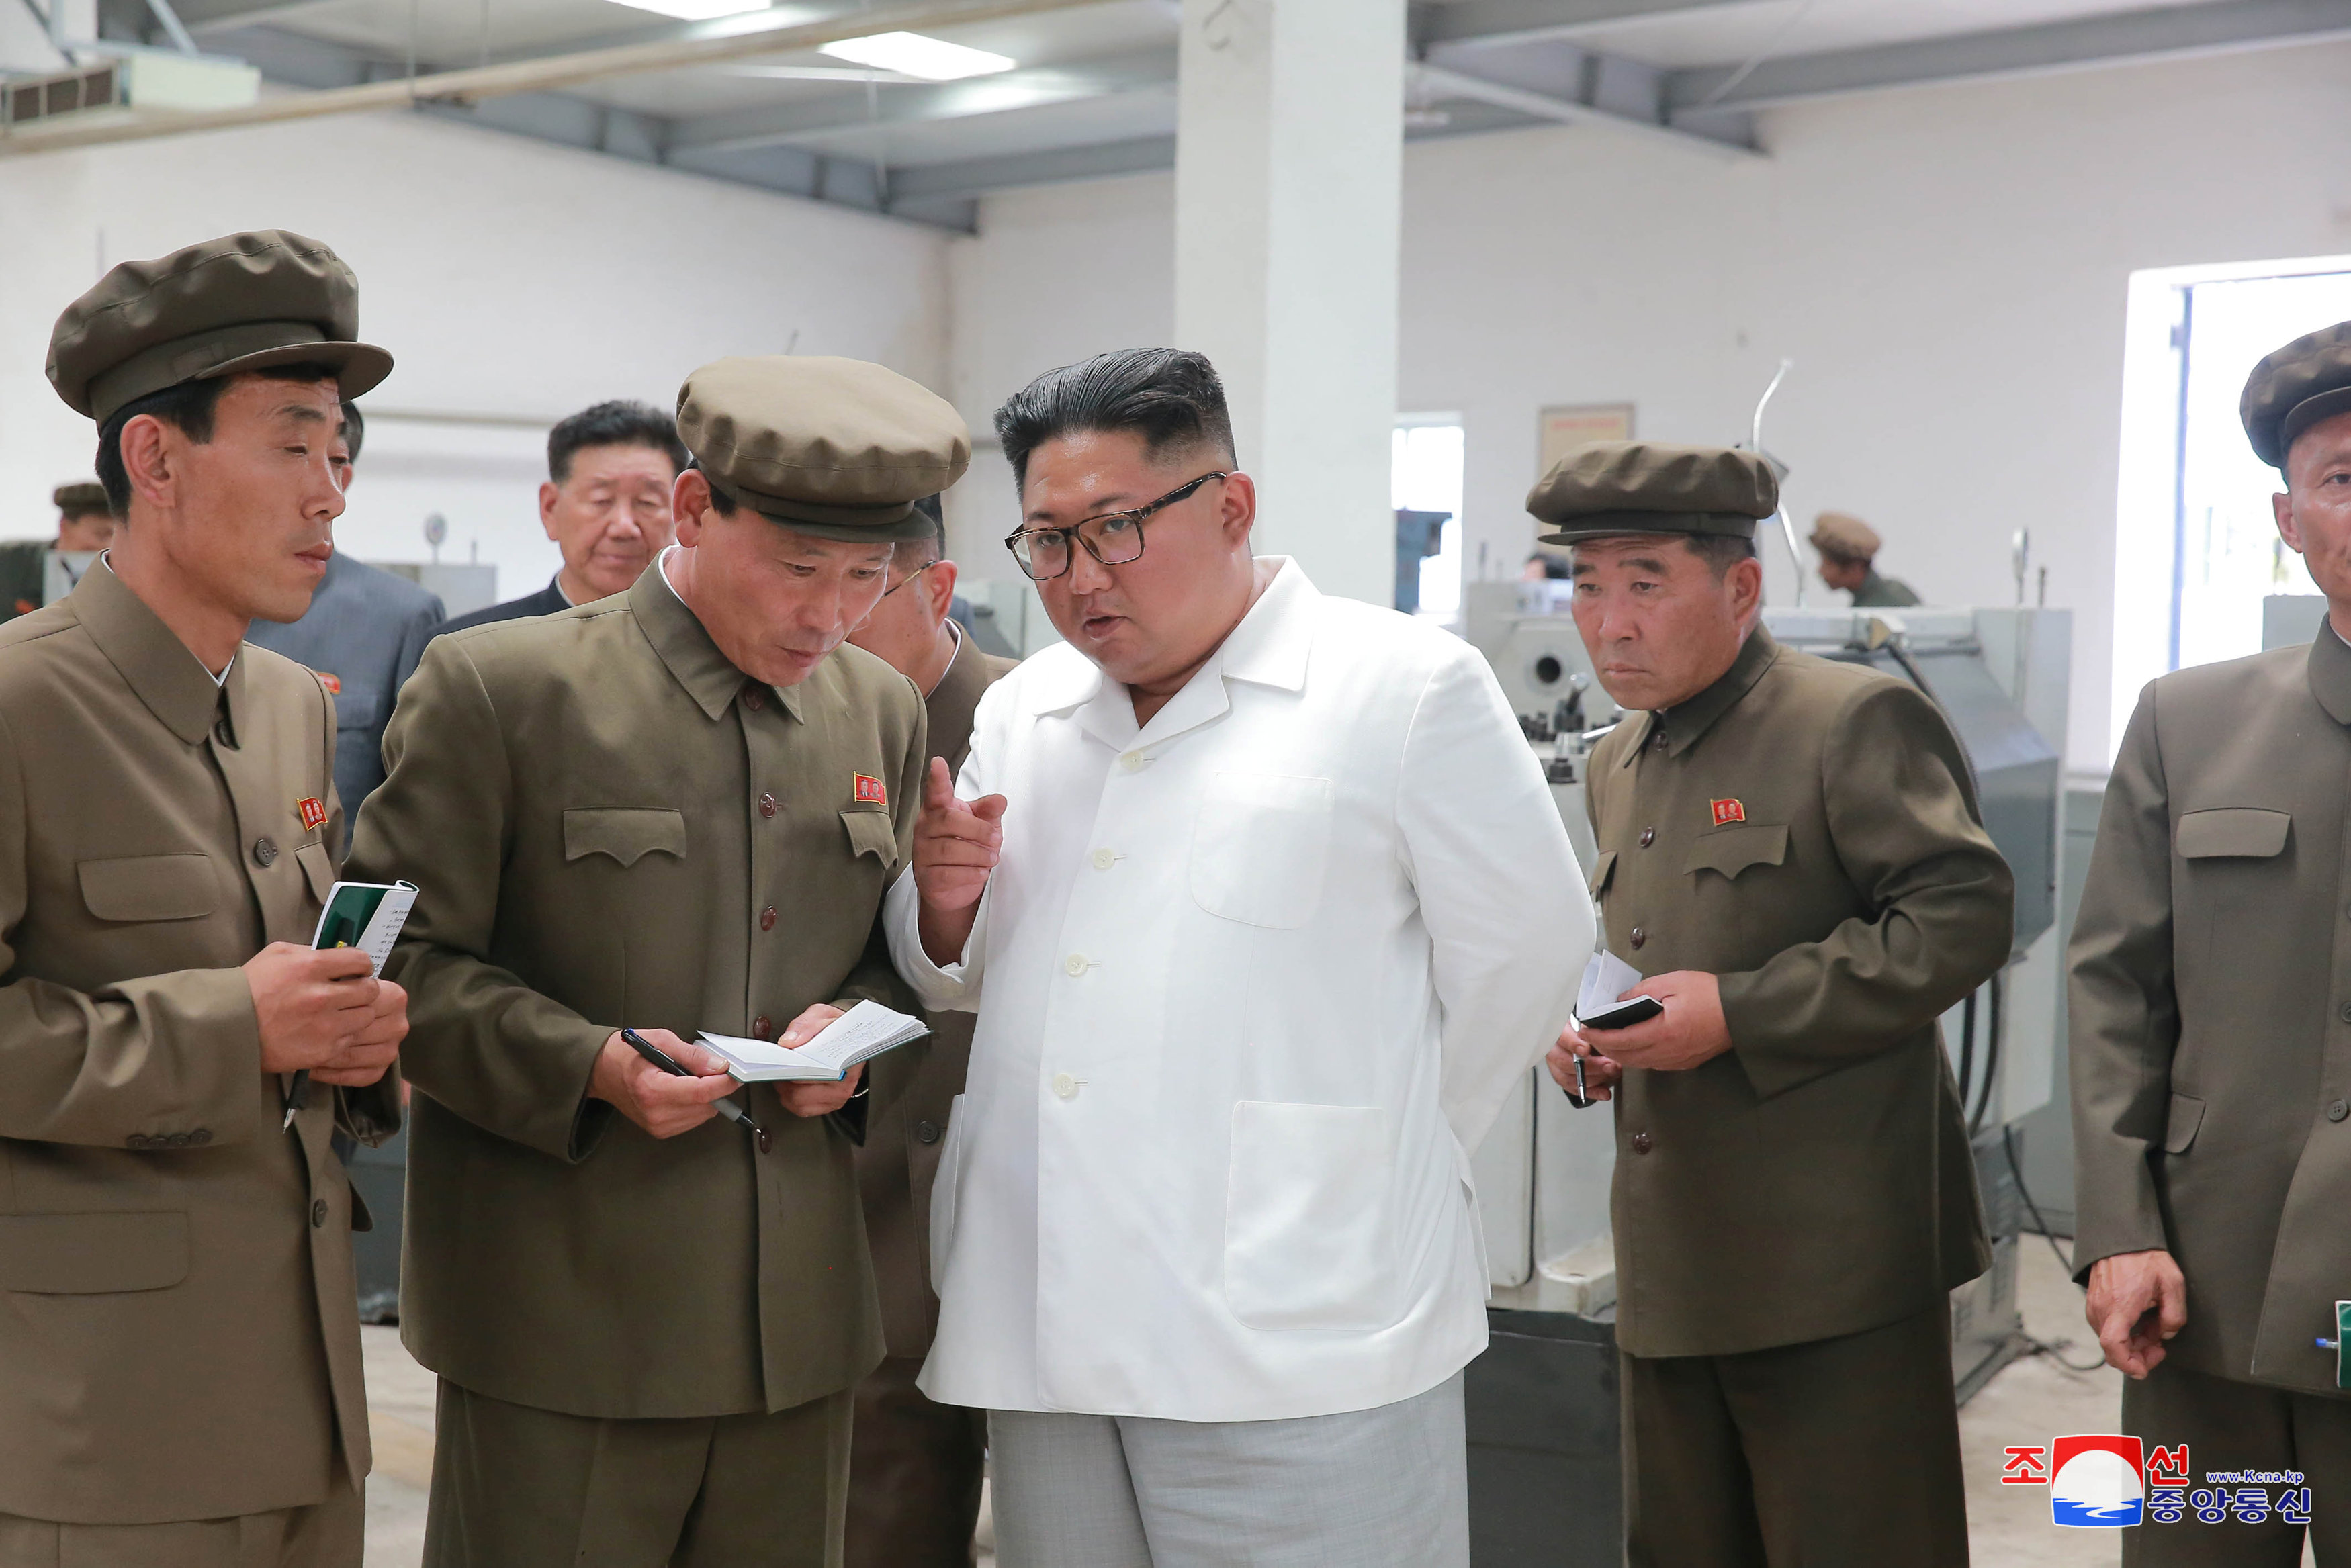 صورة أرشيفية لزعيم كوريا الشمالية نقلاً عن وكالة الأنباء المركزية الكورية. رويترز